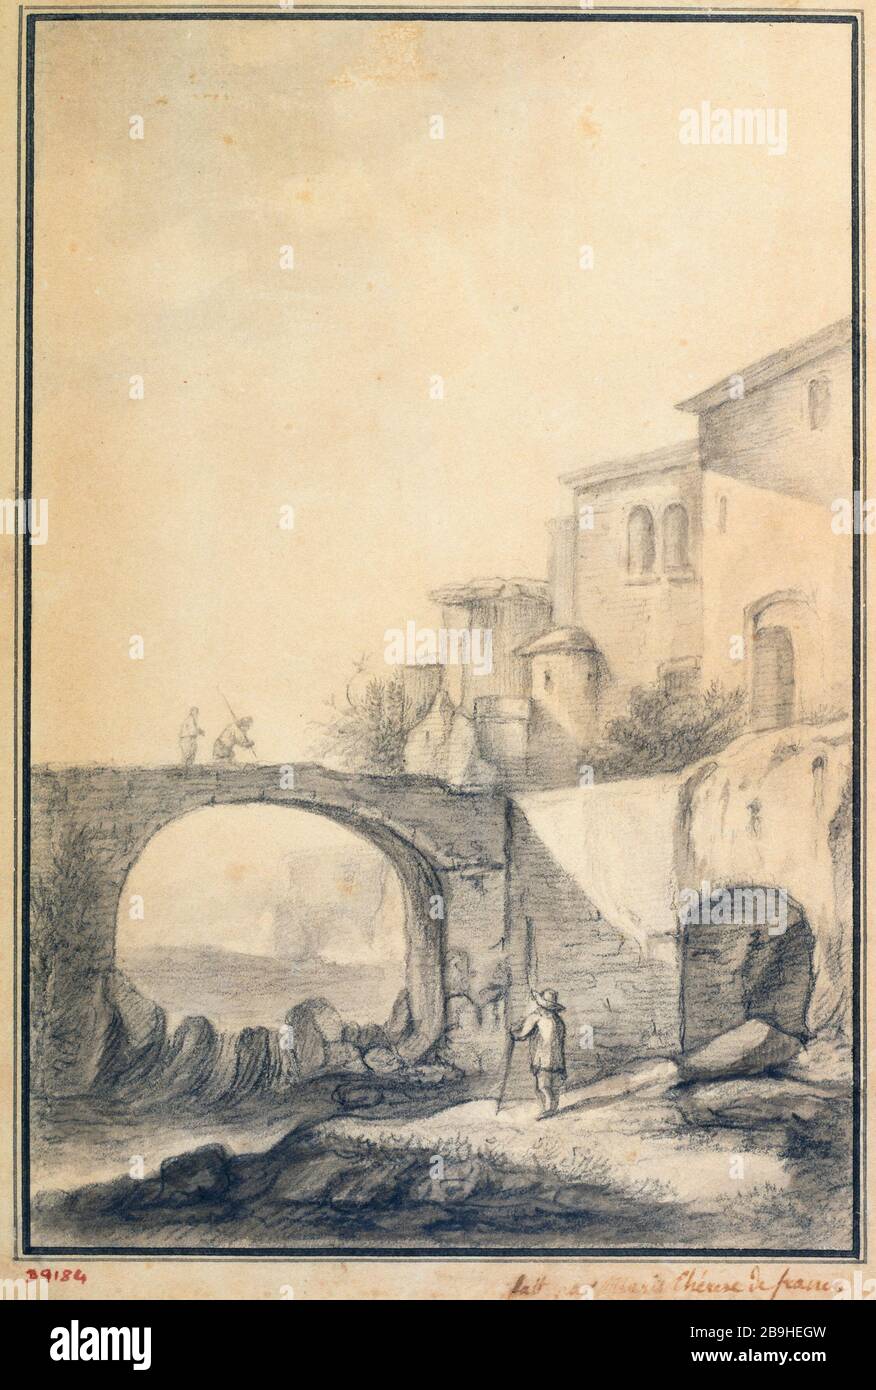 Landscape with a bridge on the left Marie-Thérèse, duchesse d'Angoulême (née Marie-Thérèse de France) (1778-1851). Paysage avec un pont à gauche. Crayon noir et lavis, 1801-1825. Paris, musée Carnavalet. Stock Photo